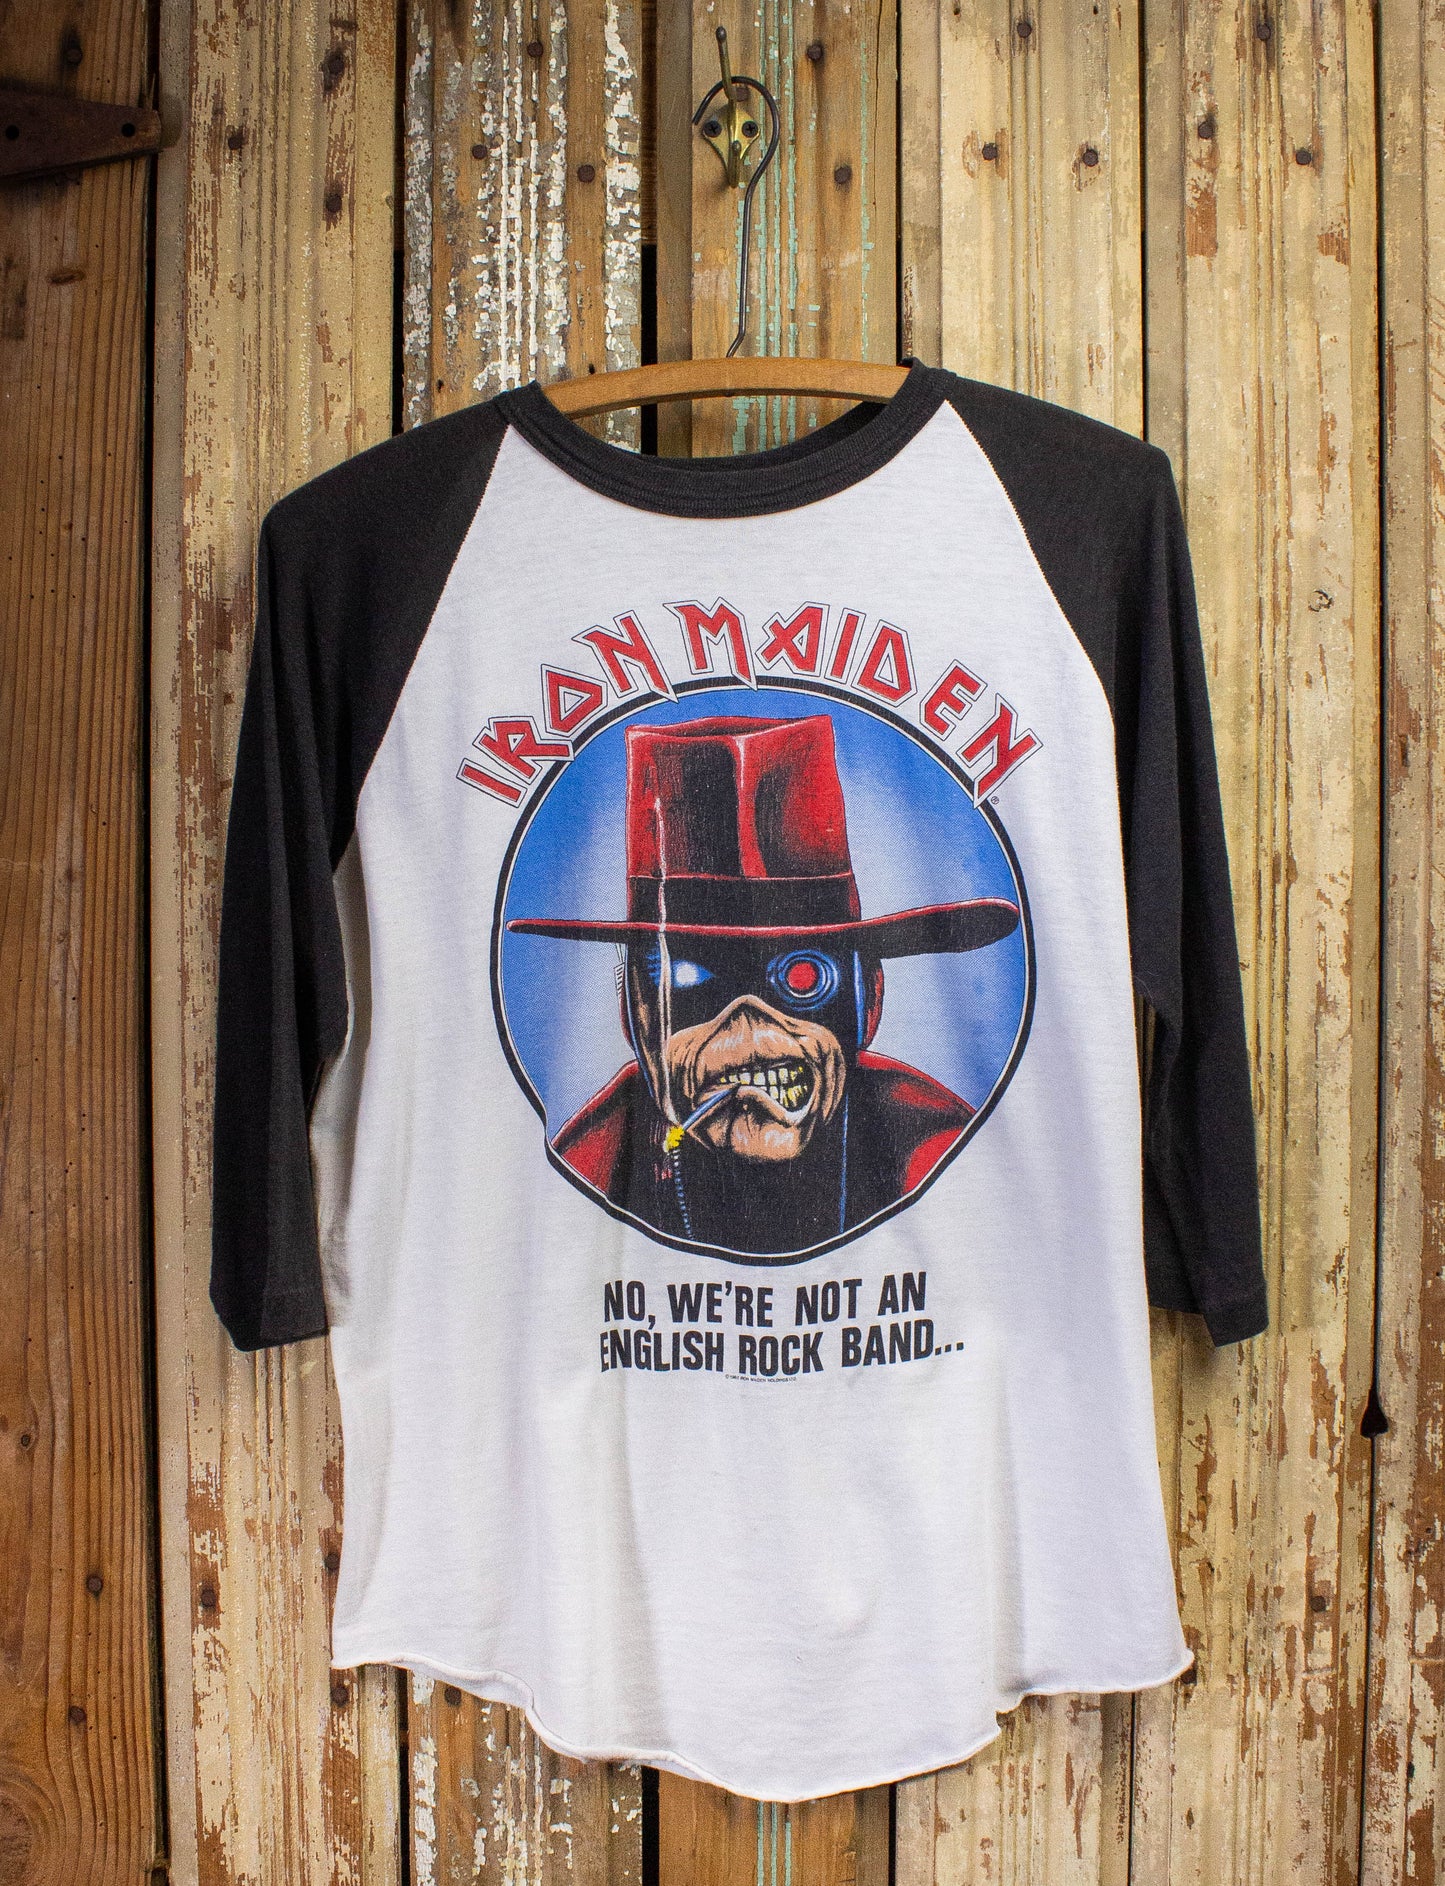 Vintage Iron Maiden No, We're Not an English Rock Band Raglan Concert T Shirt 1987 Black/White Large Large